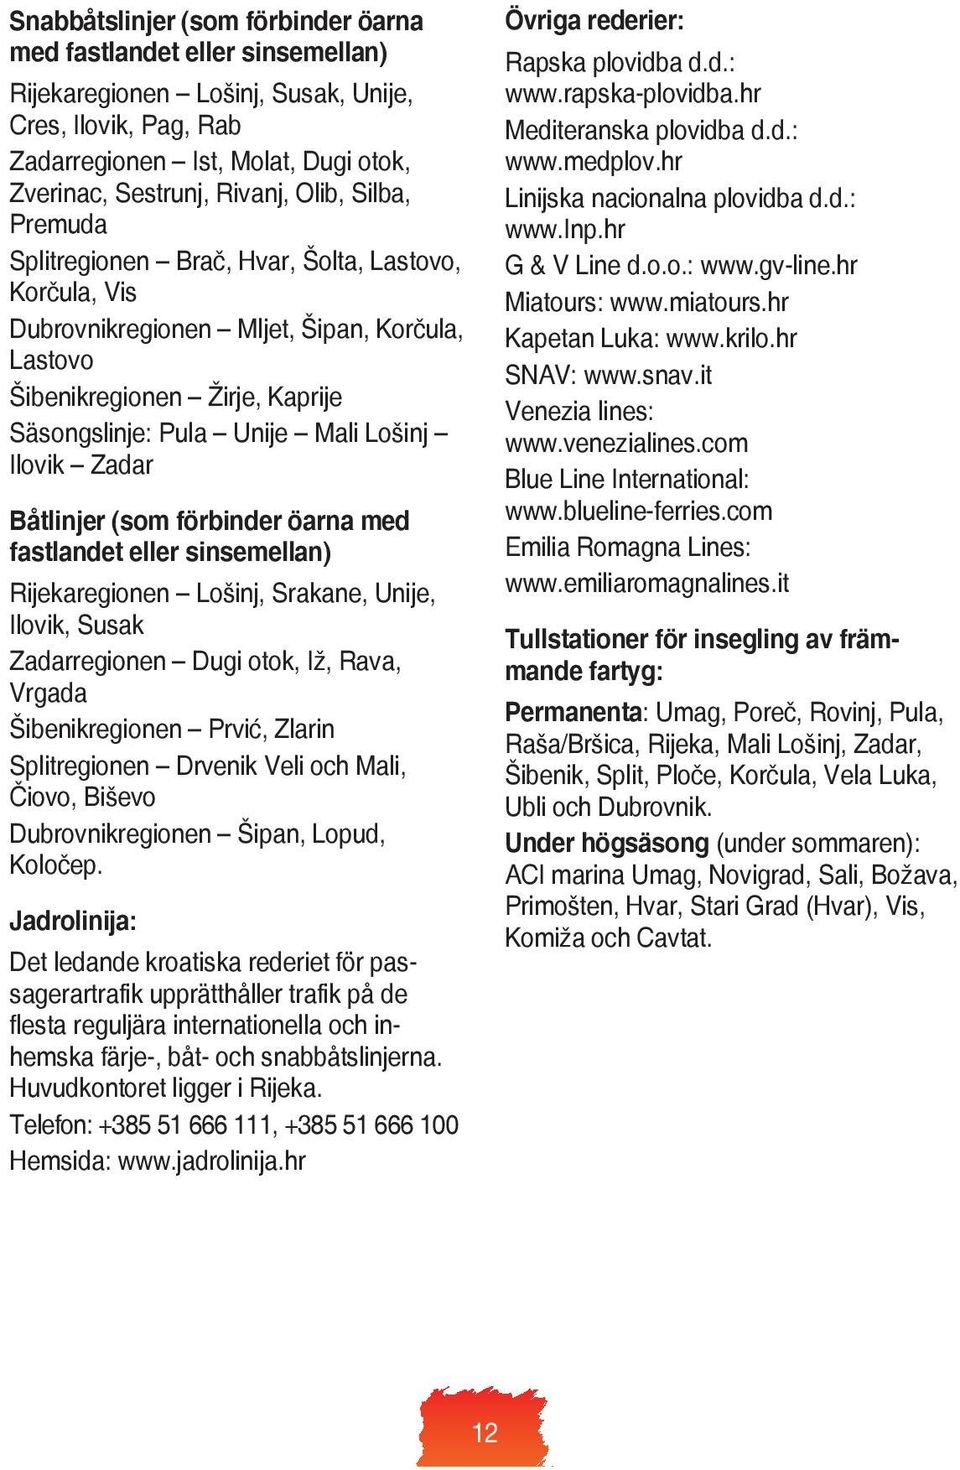 Zadar Båtlinjer (som förbinder öarna med fastlandet eller sinsemellan) Rijekaregionen Lošinj, Srakane, Unije, Ilovik, Susak Zadarregionen Dugi otok, Iž, Rava, Vrgada Šibenikregionen Prvić, Zlarin